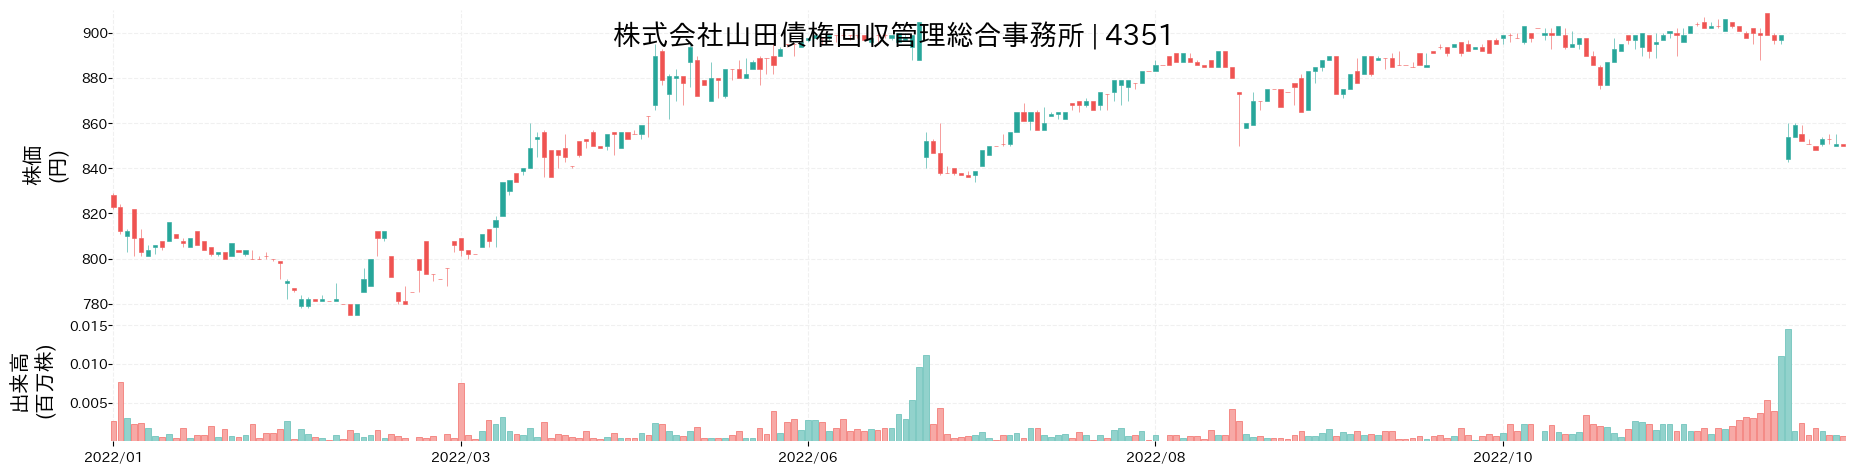 山田債権回収管理総合事務所の株価推移(2022)